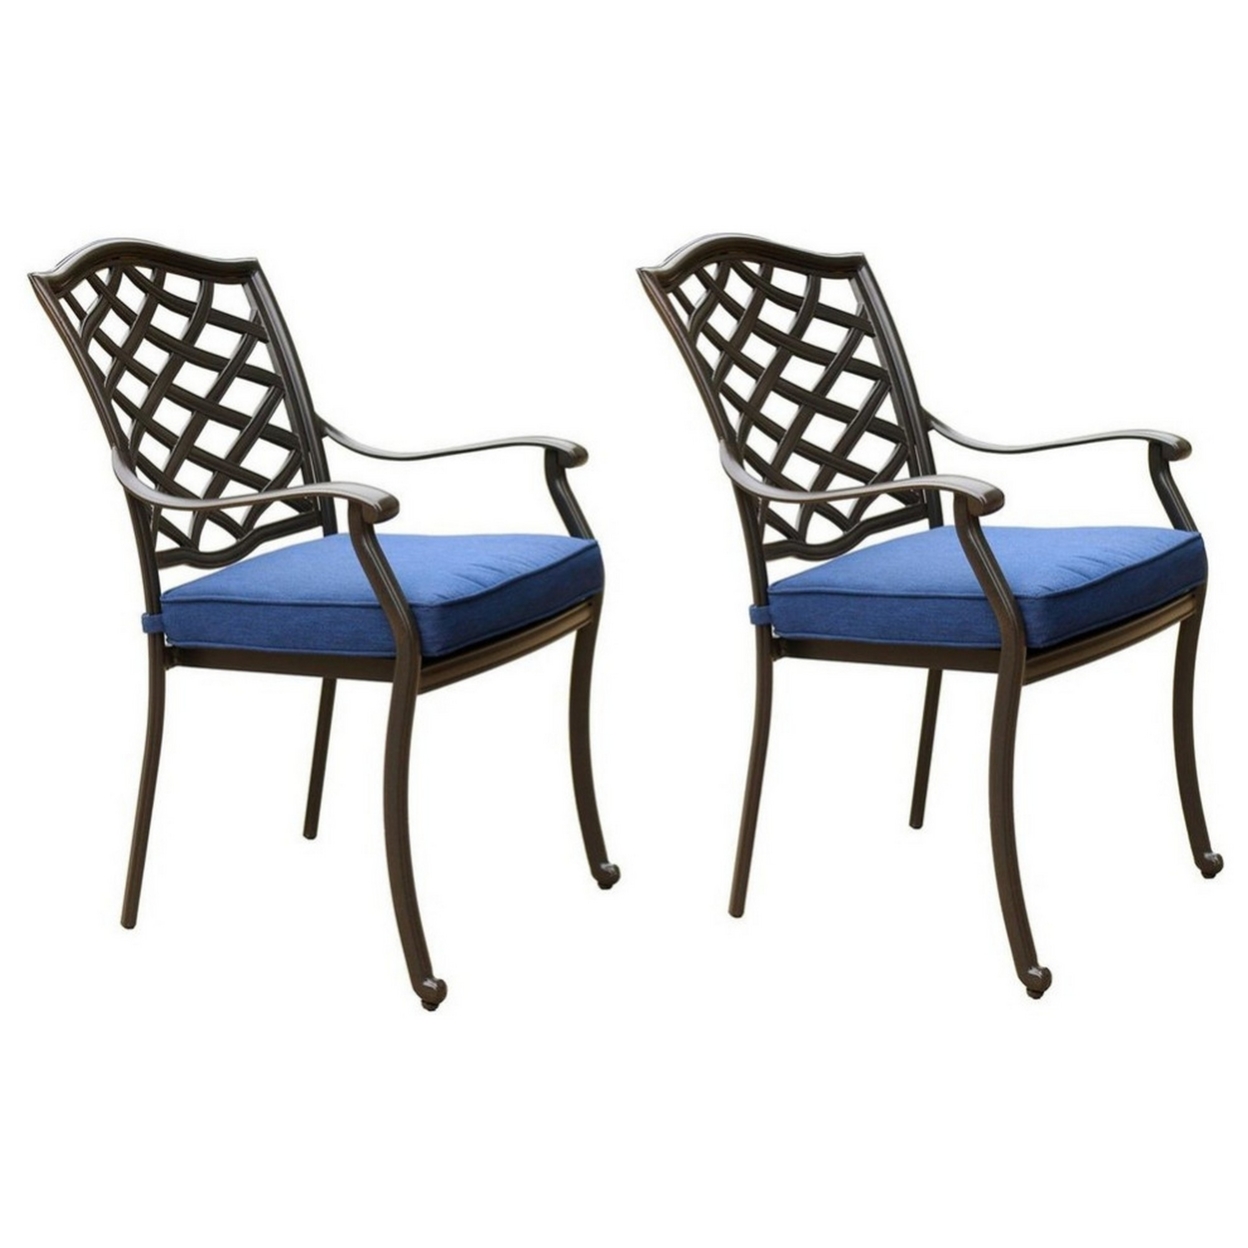 Wynn 26 Inch Outdoor Dining Chair, Olefin Fabric, Lattice Back, Espresso- Saltoro Sherpi